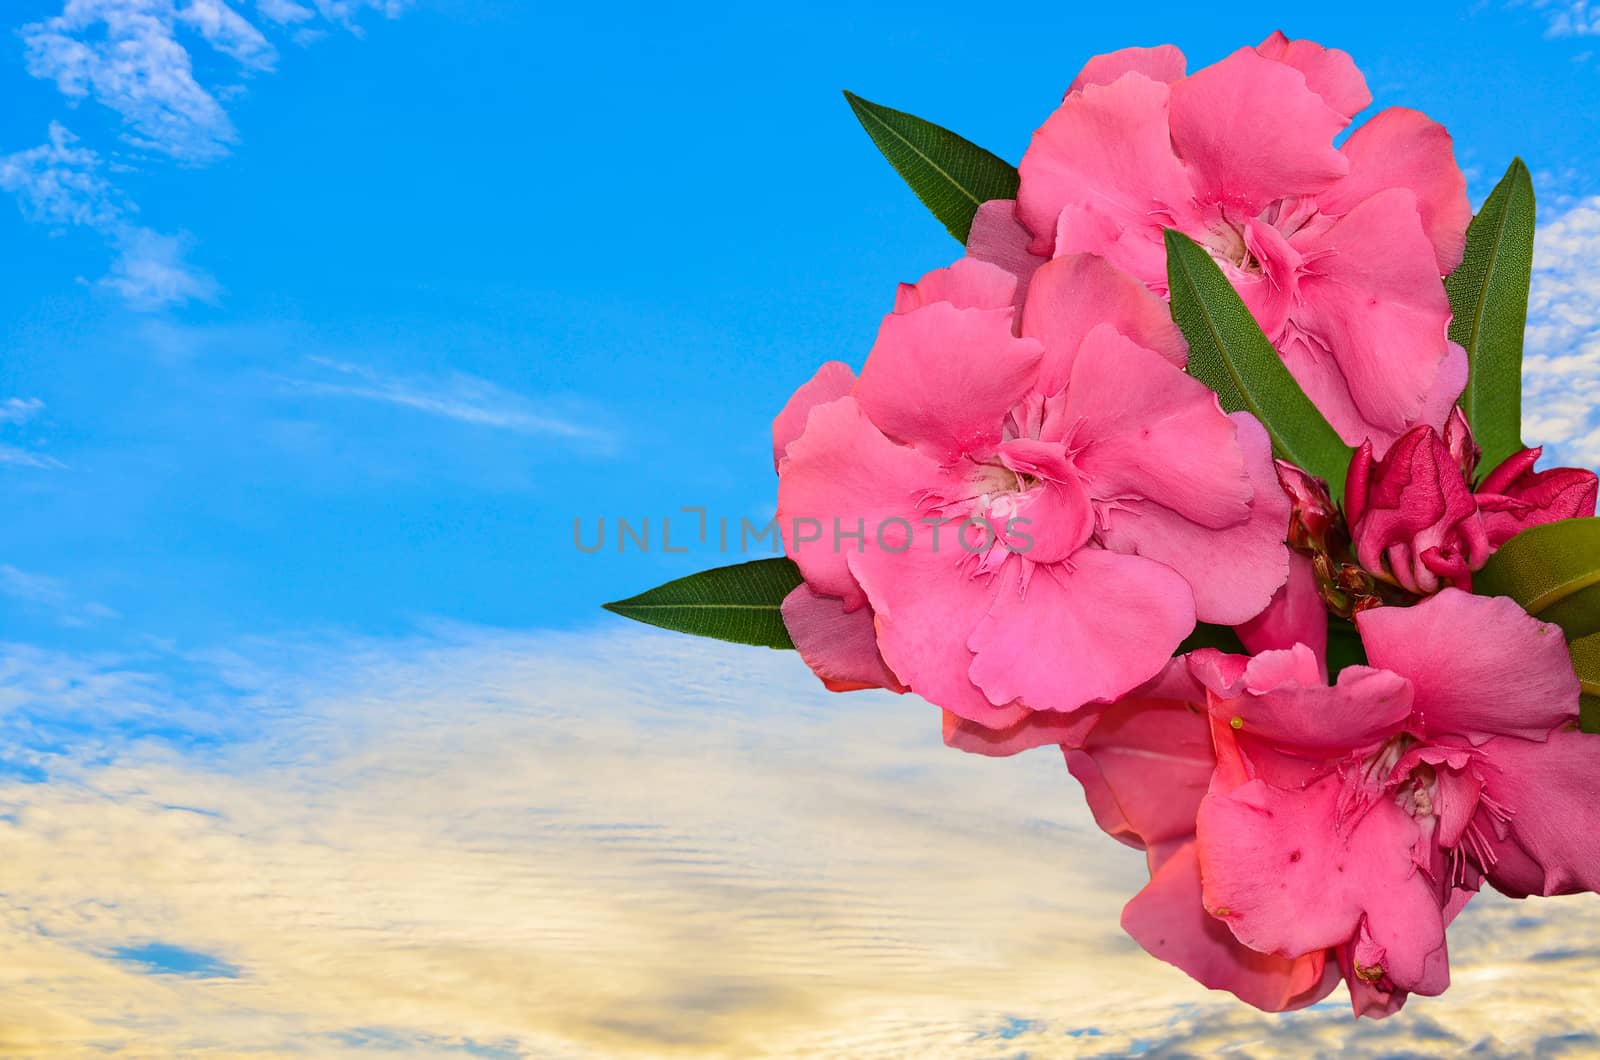 Beautyfull Sweet Oleander flower on blue sky background